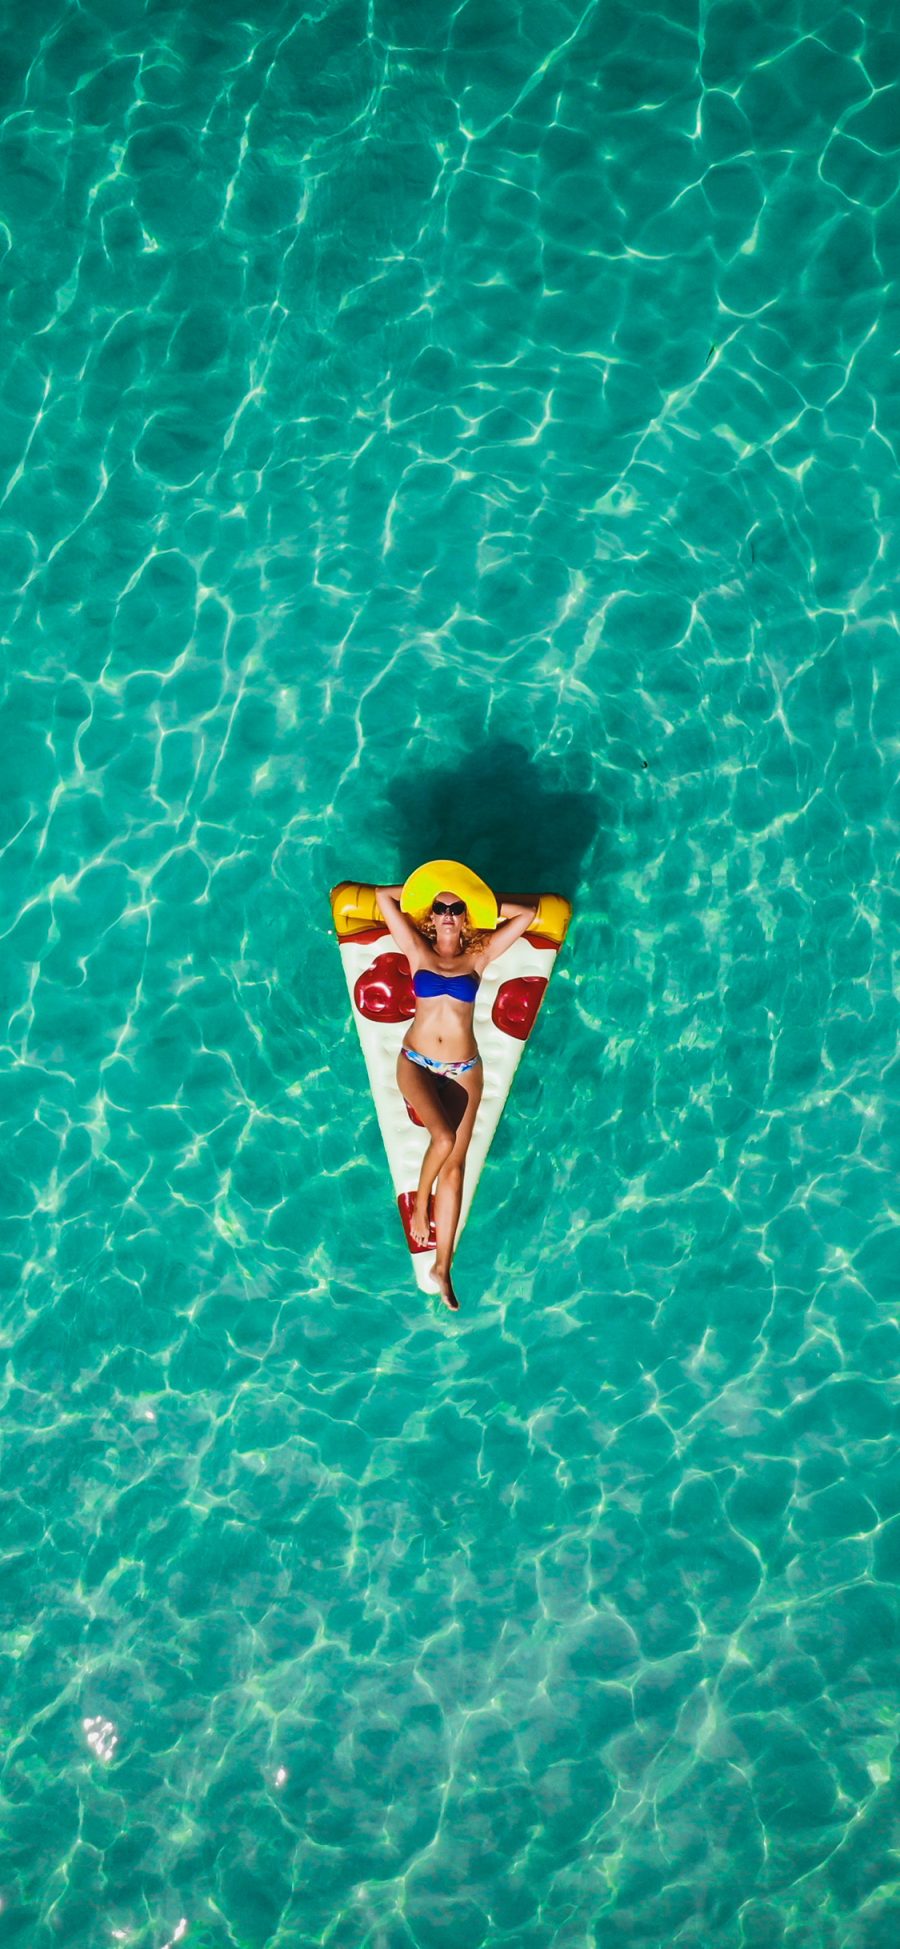 [2436×1125]欧美美女 大海 披萨泳圈 比基尼 苹果手机美女壁纸图片